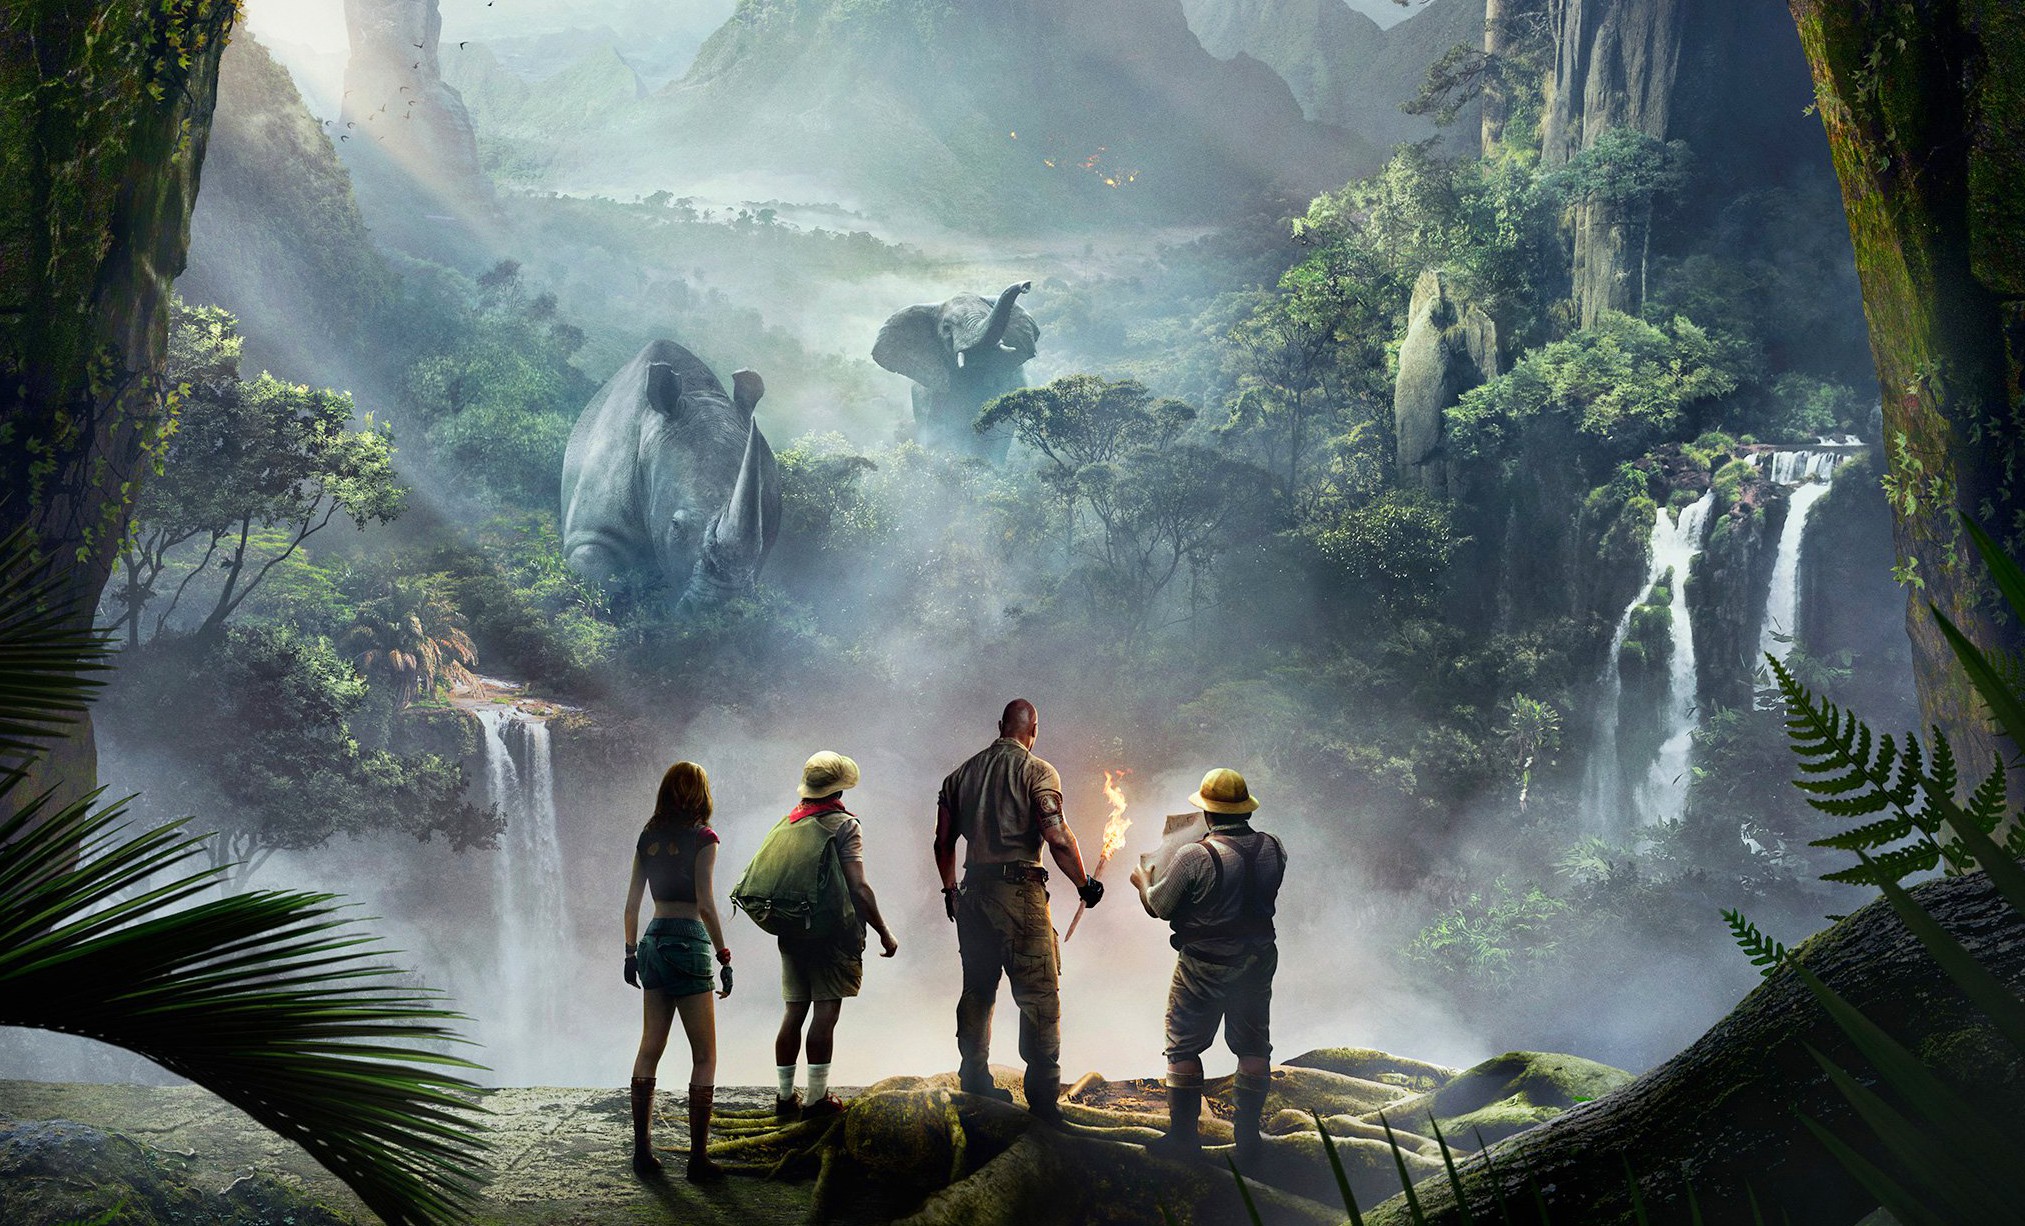 Nädala parim film: ostke Dwayne Johnsoniga film “Jumanji: Tere tulemast džunglisse!” 9,90 R $ eest!